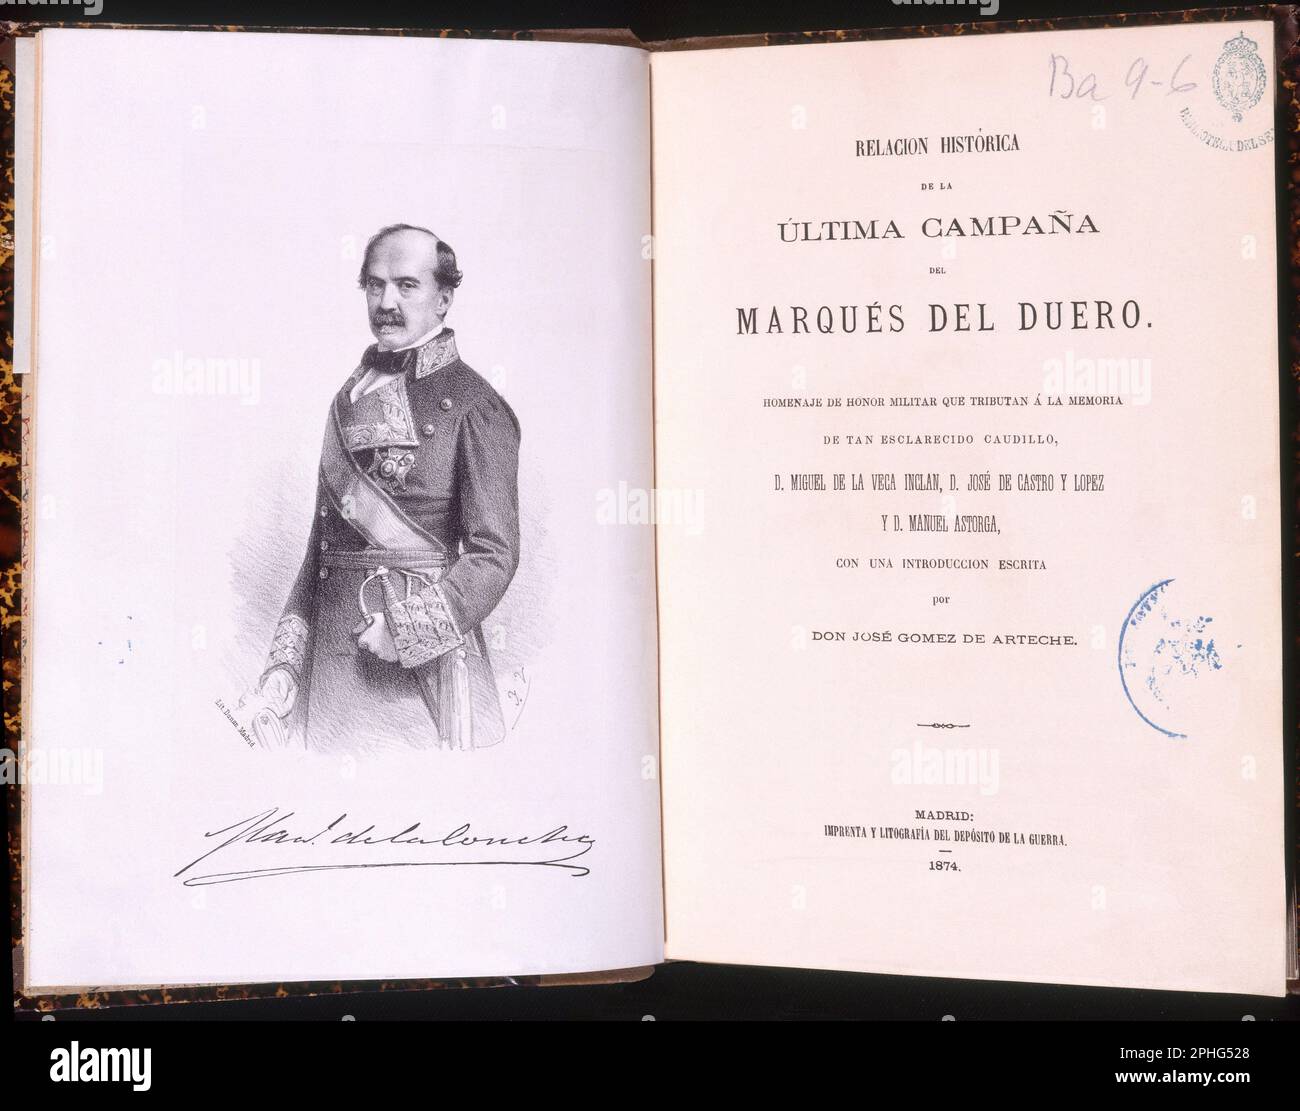 RELACION DE LA ULTIMA CAMPAÑA DEL MARQUES DEL DUERO - 1861. Author: VEGA INCLAN MIGUEL DE LA. Location: SENADO-BIBLIOTECA-COLECCION. MADRID. SPAIN. MANUEL DE LA CONCHA. MARQUES DEL DUERO. DUERO MARQUES DEL. GUTIERREZ DE LA CONCHA MANUEL. Stock Photo